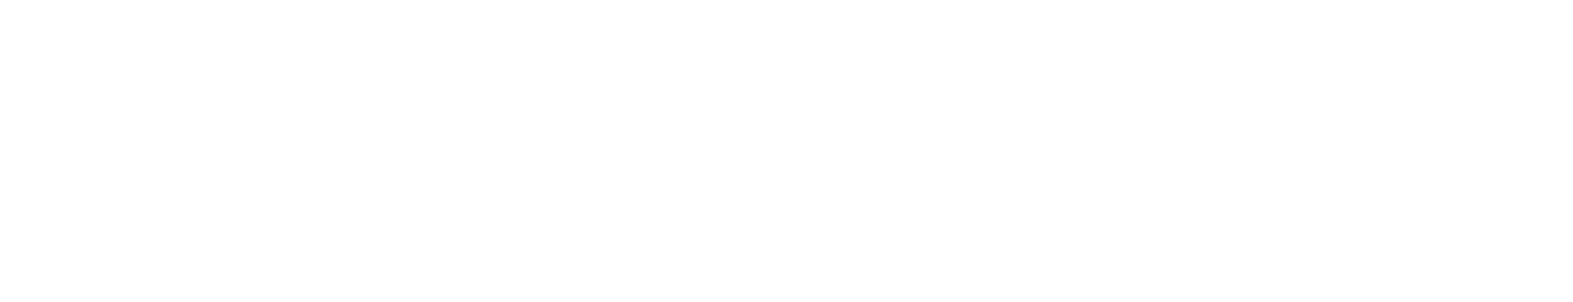 Fannie Mae
 Logo groß für dunkle Hintergründe (transparentes PNG)